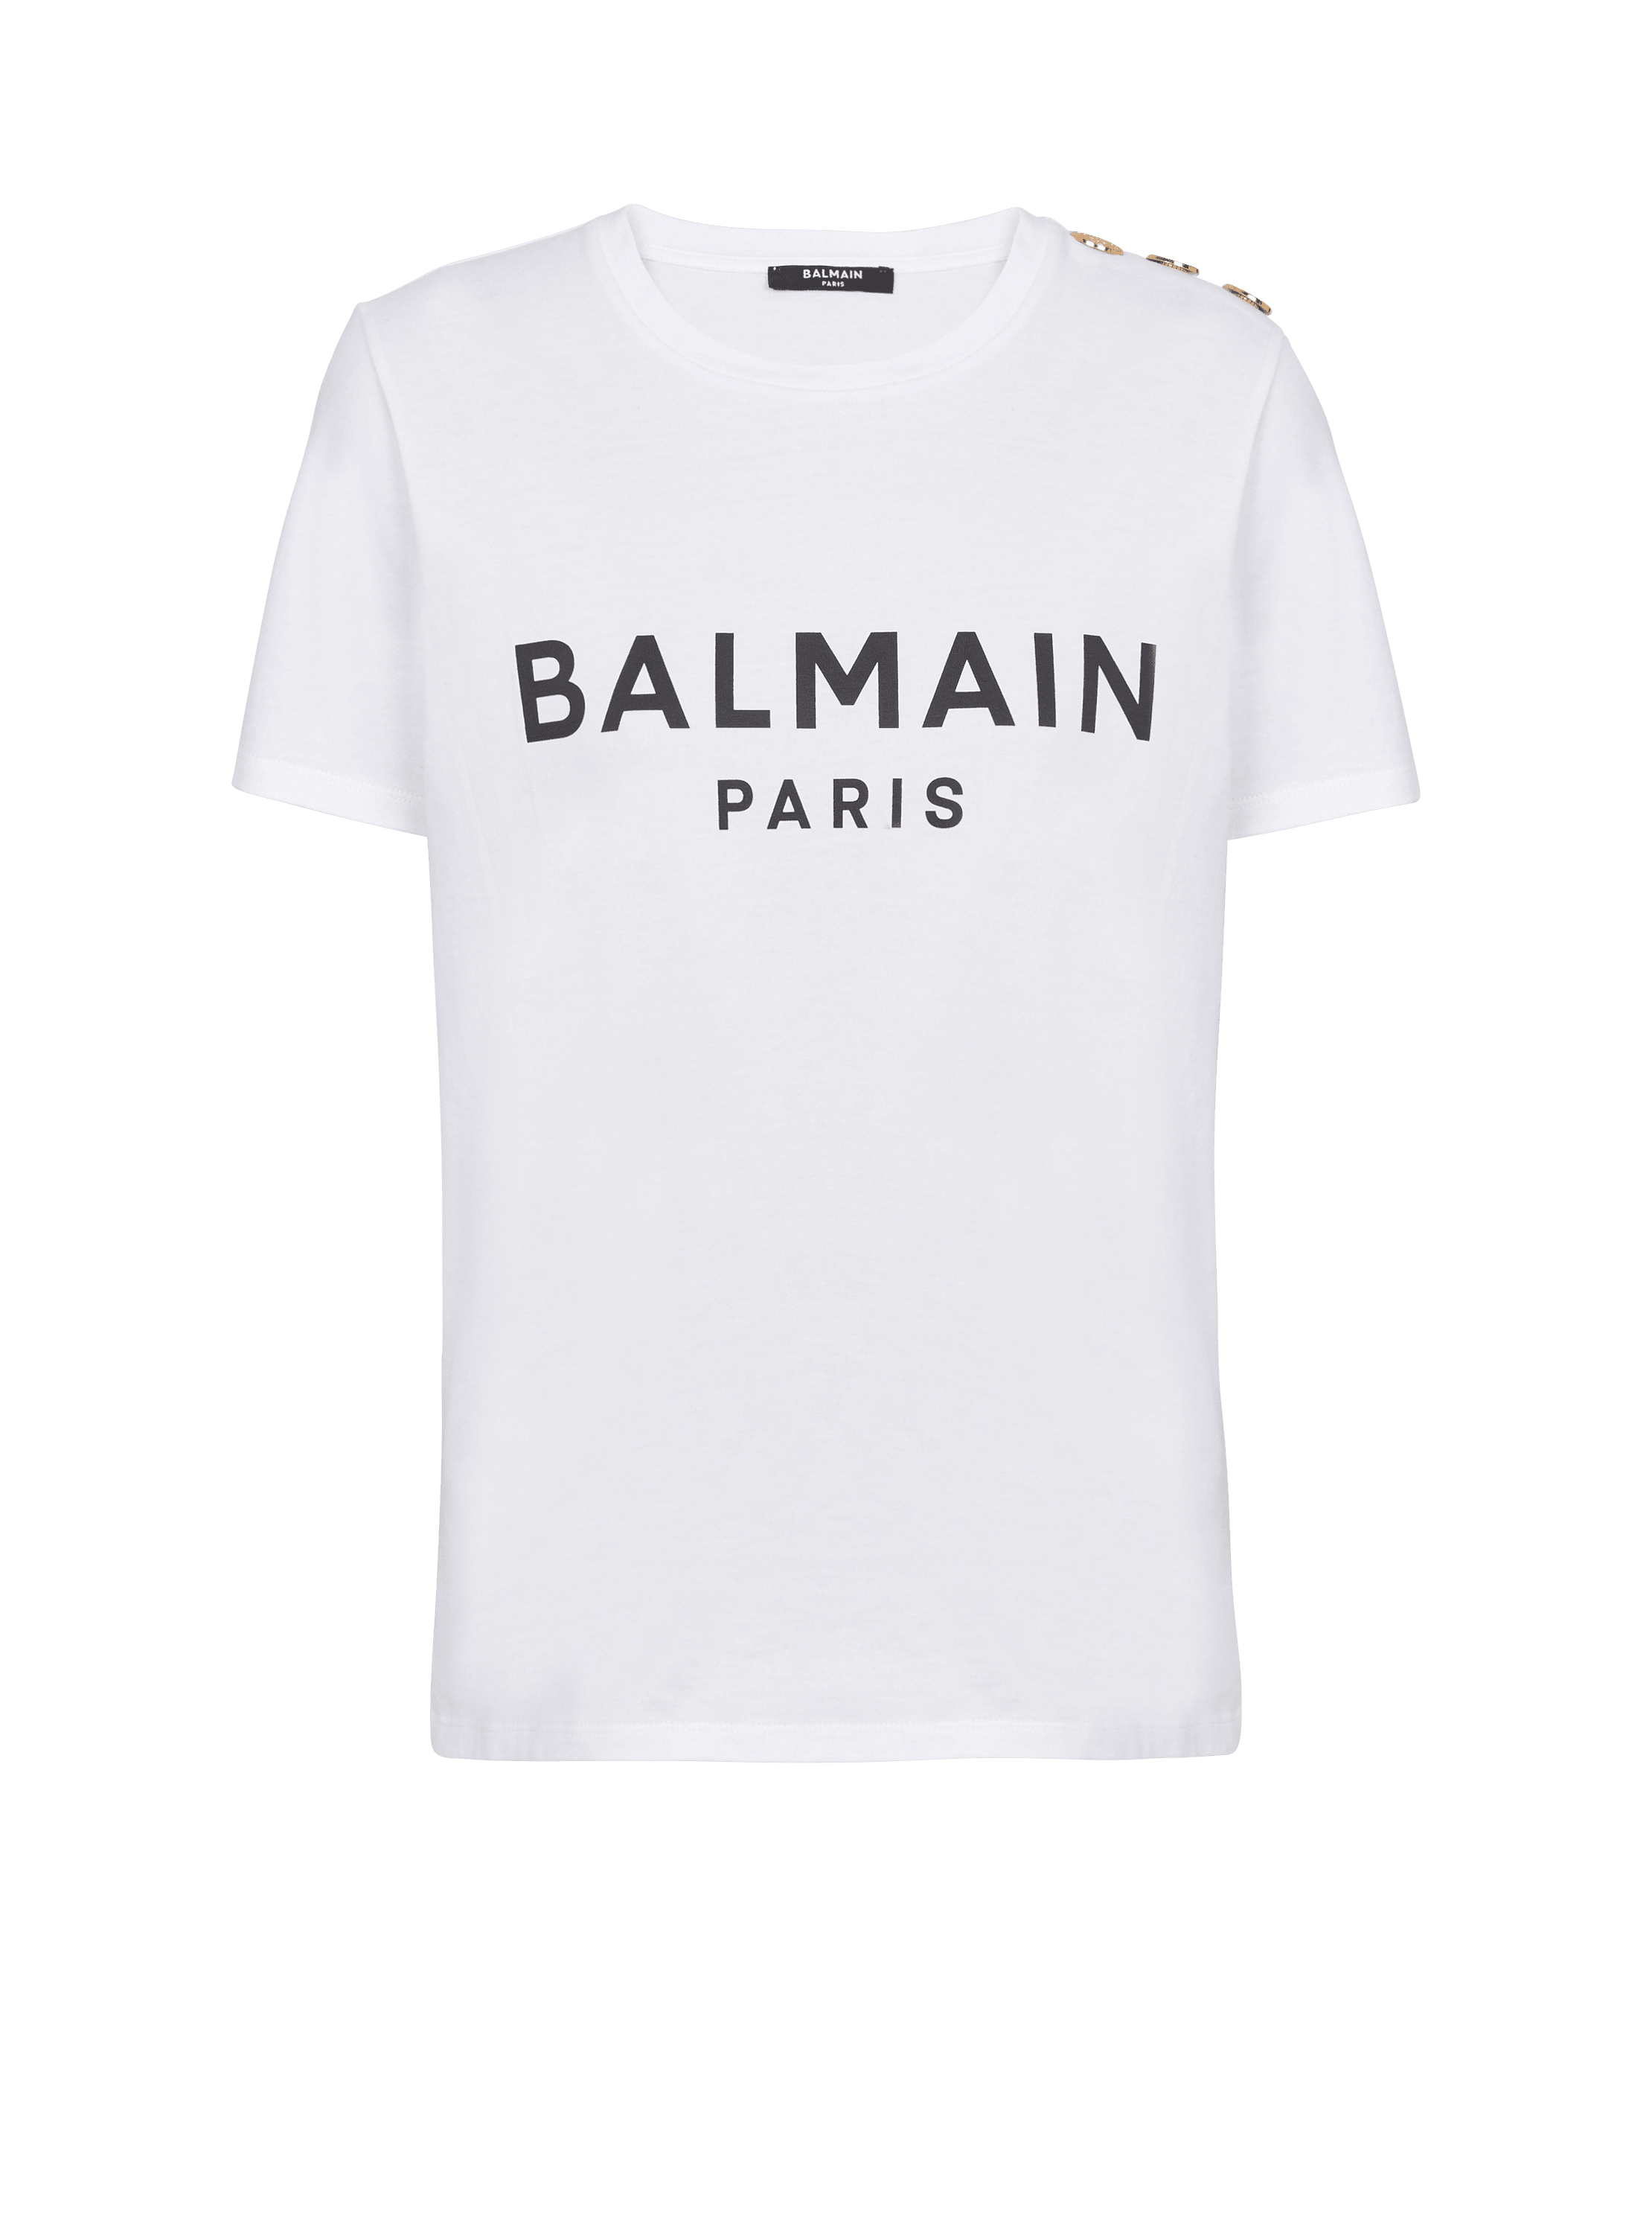 Camiseta con estampado Balmain Paris, blanco, hi-res